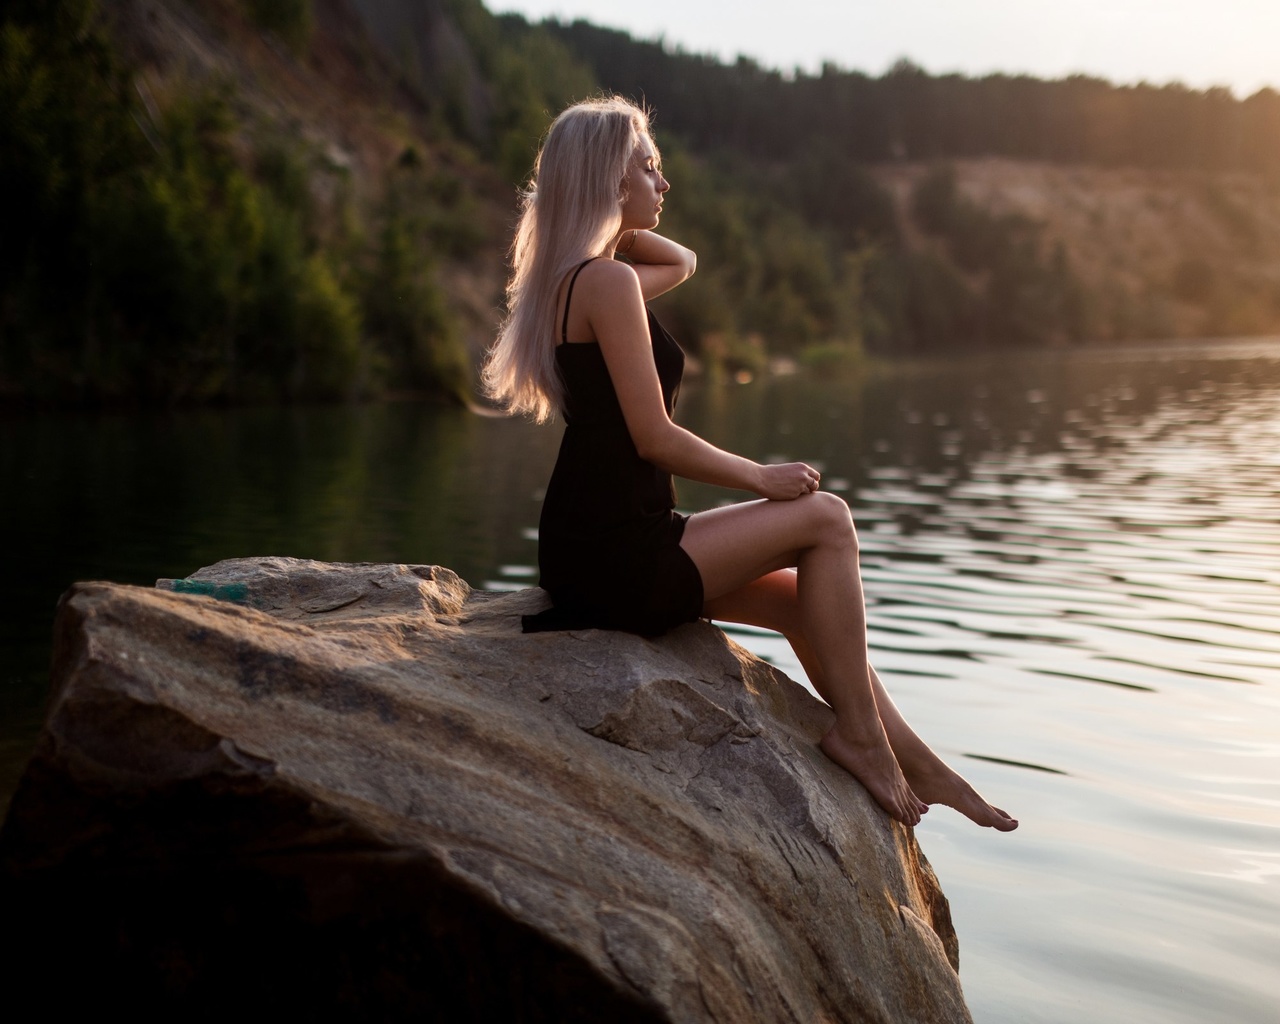 Эротические снимки потрясающей блондинки в озере